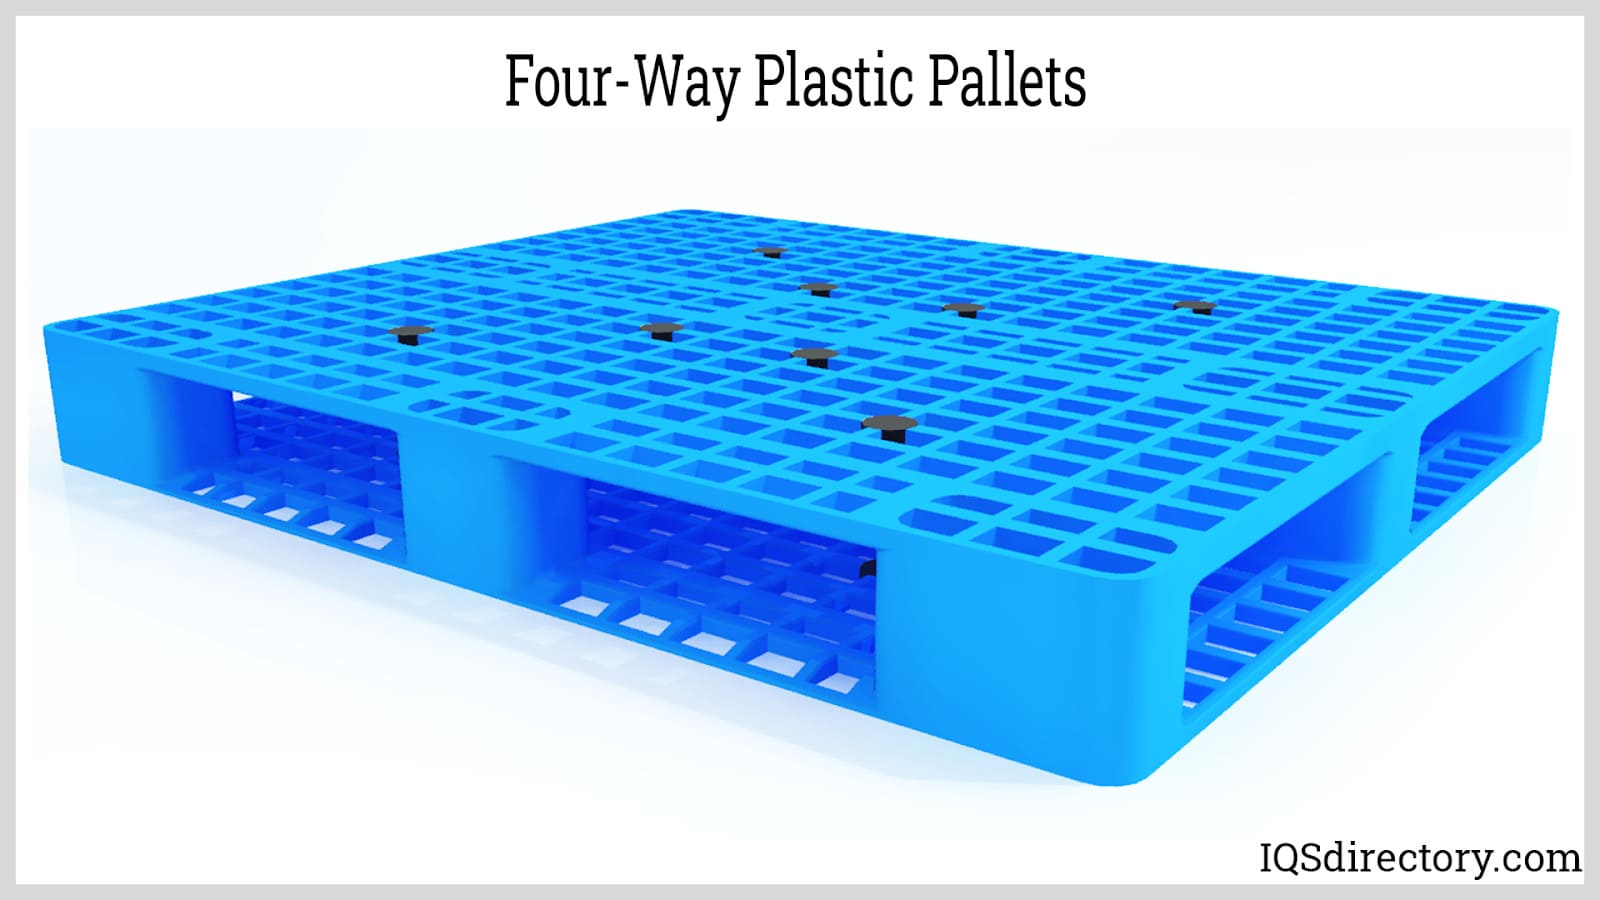 Four-Way Plastic Pallets